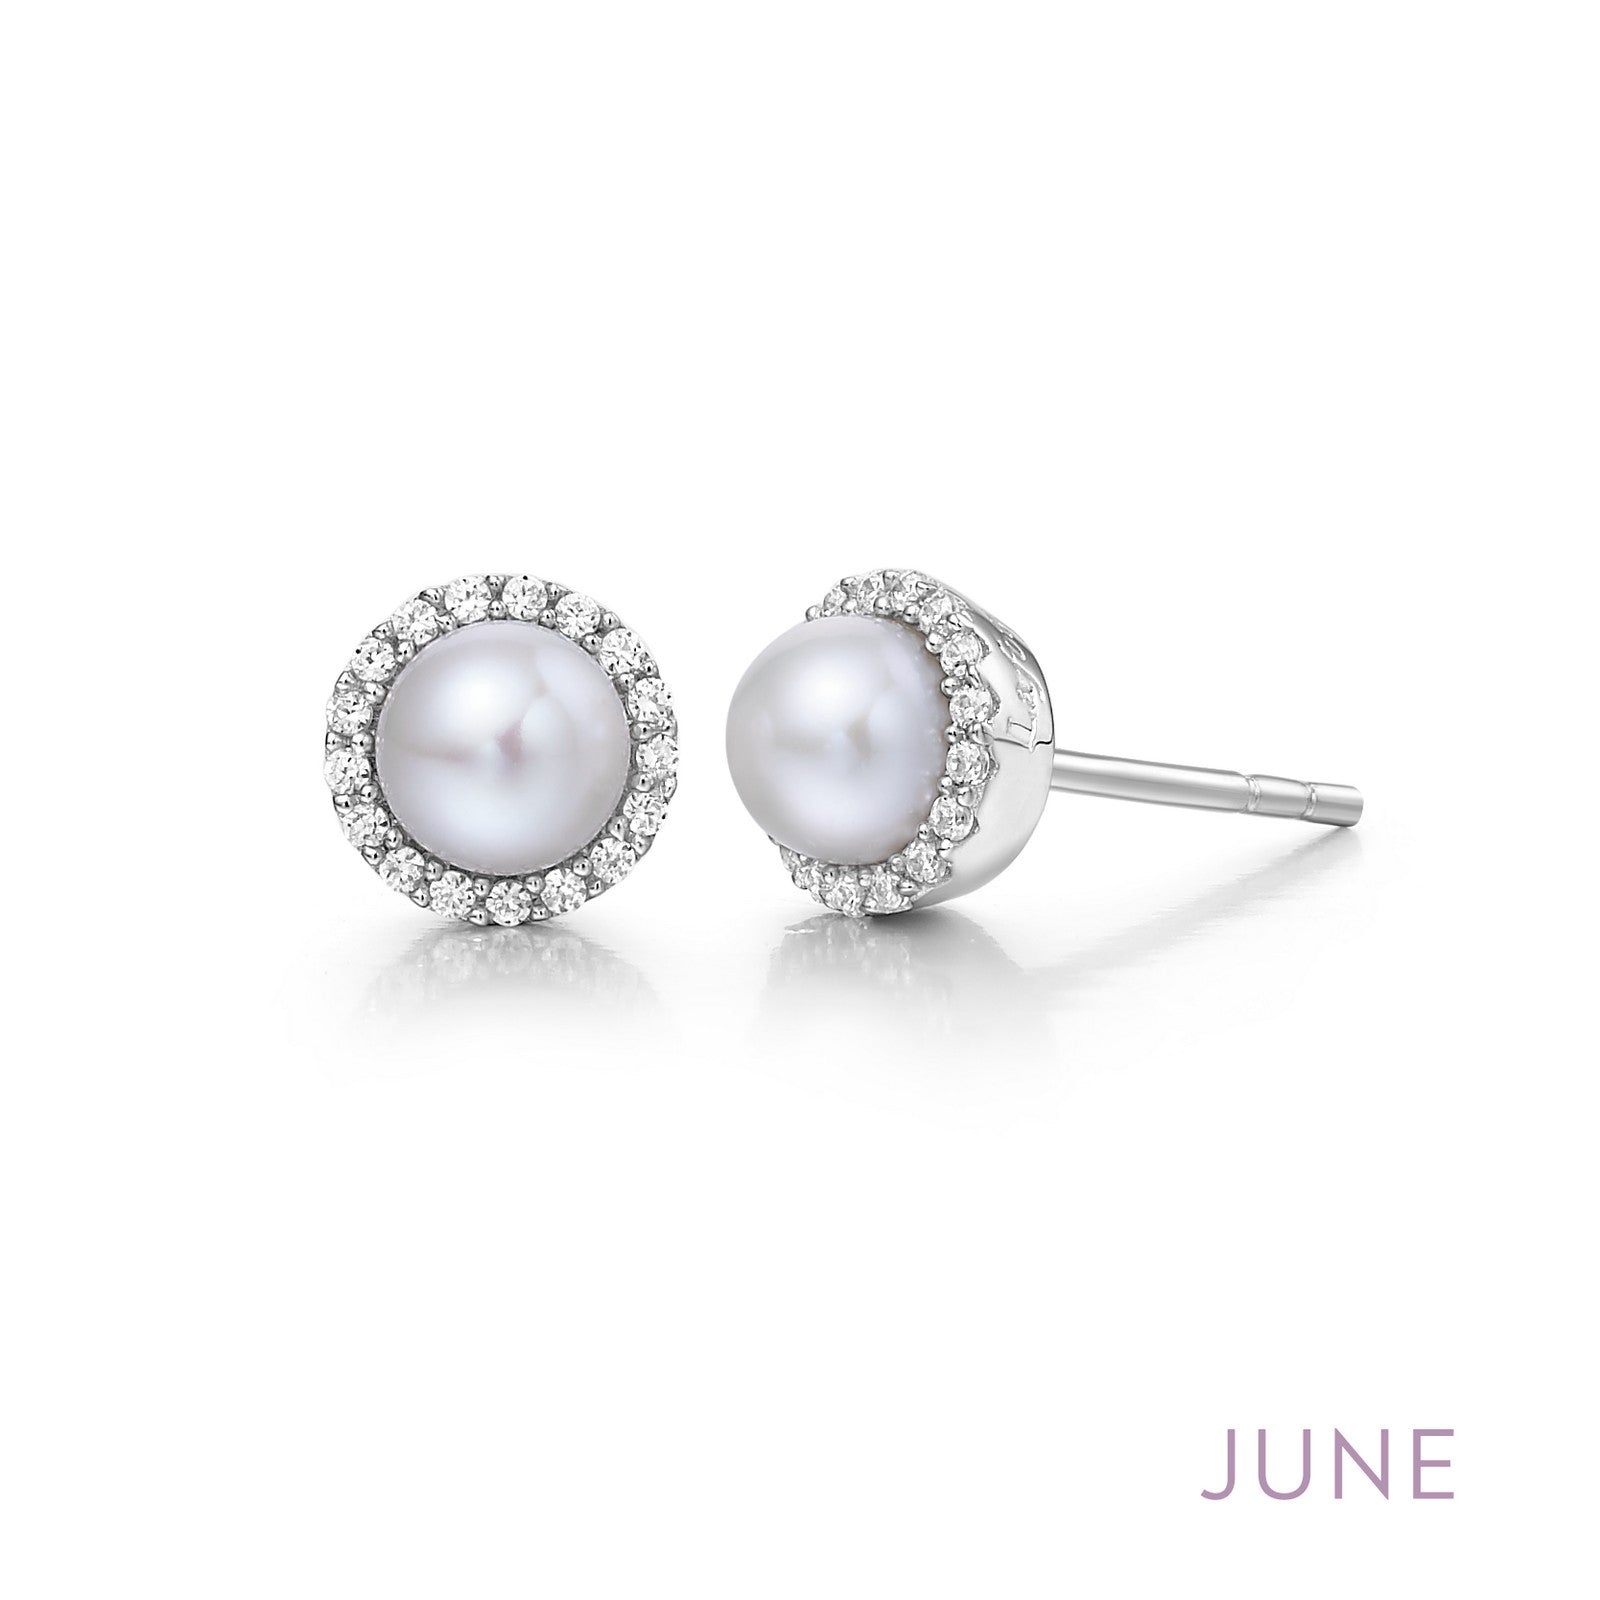 June Birthstone Earrings-BE001PLP